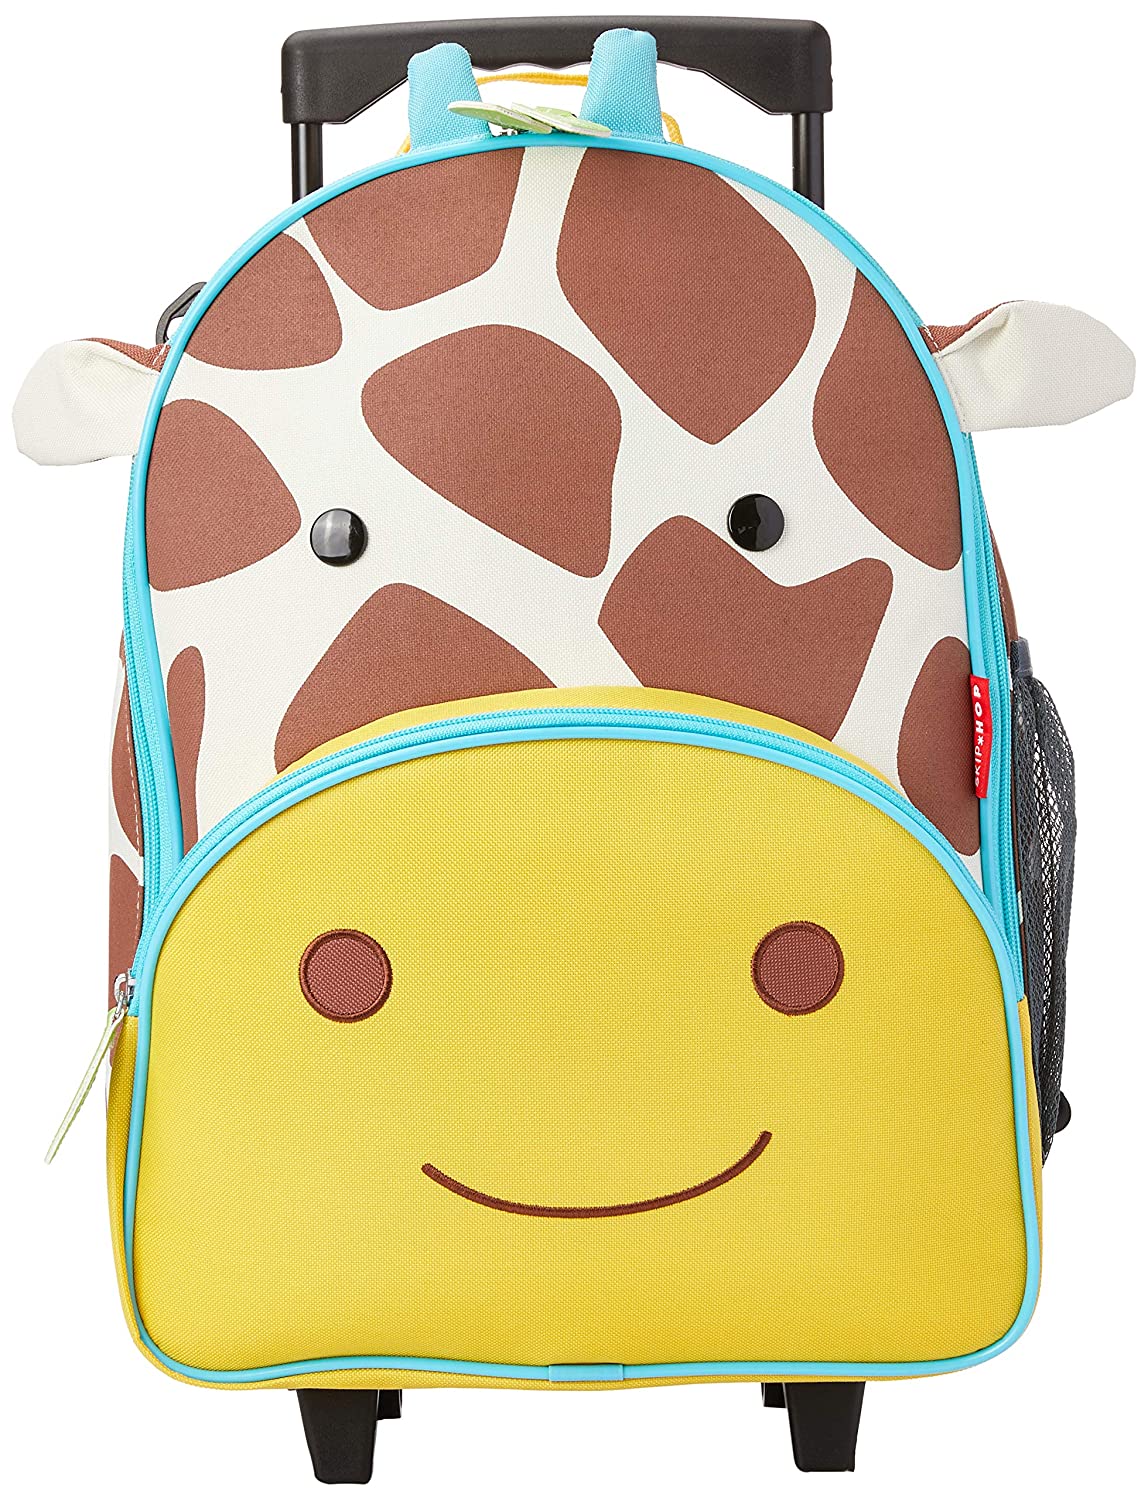 Skip Hop Giraffe Wheeled Kids Luggage